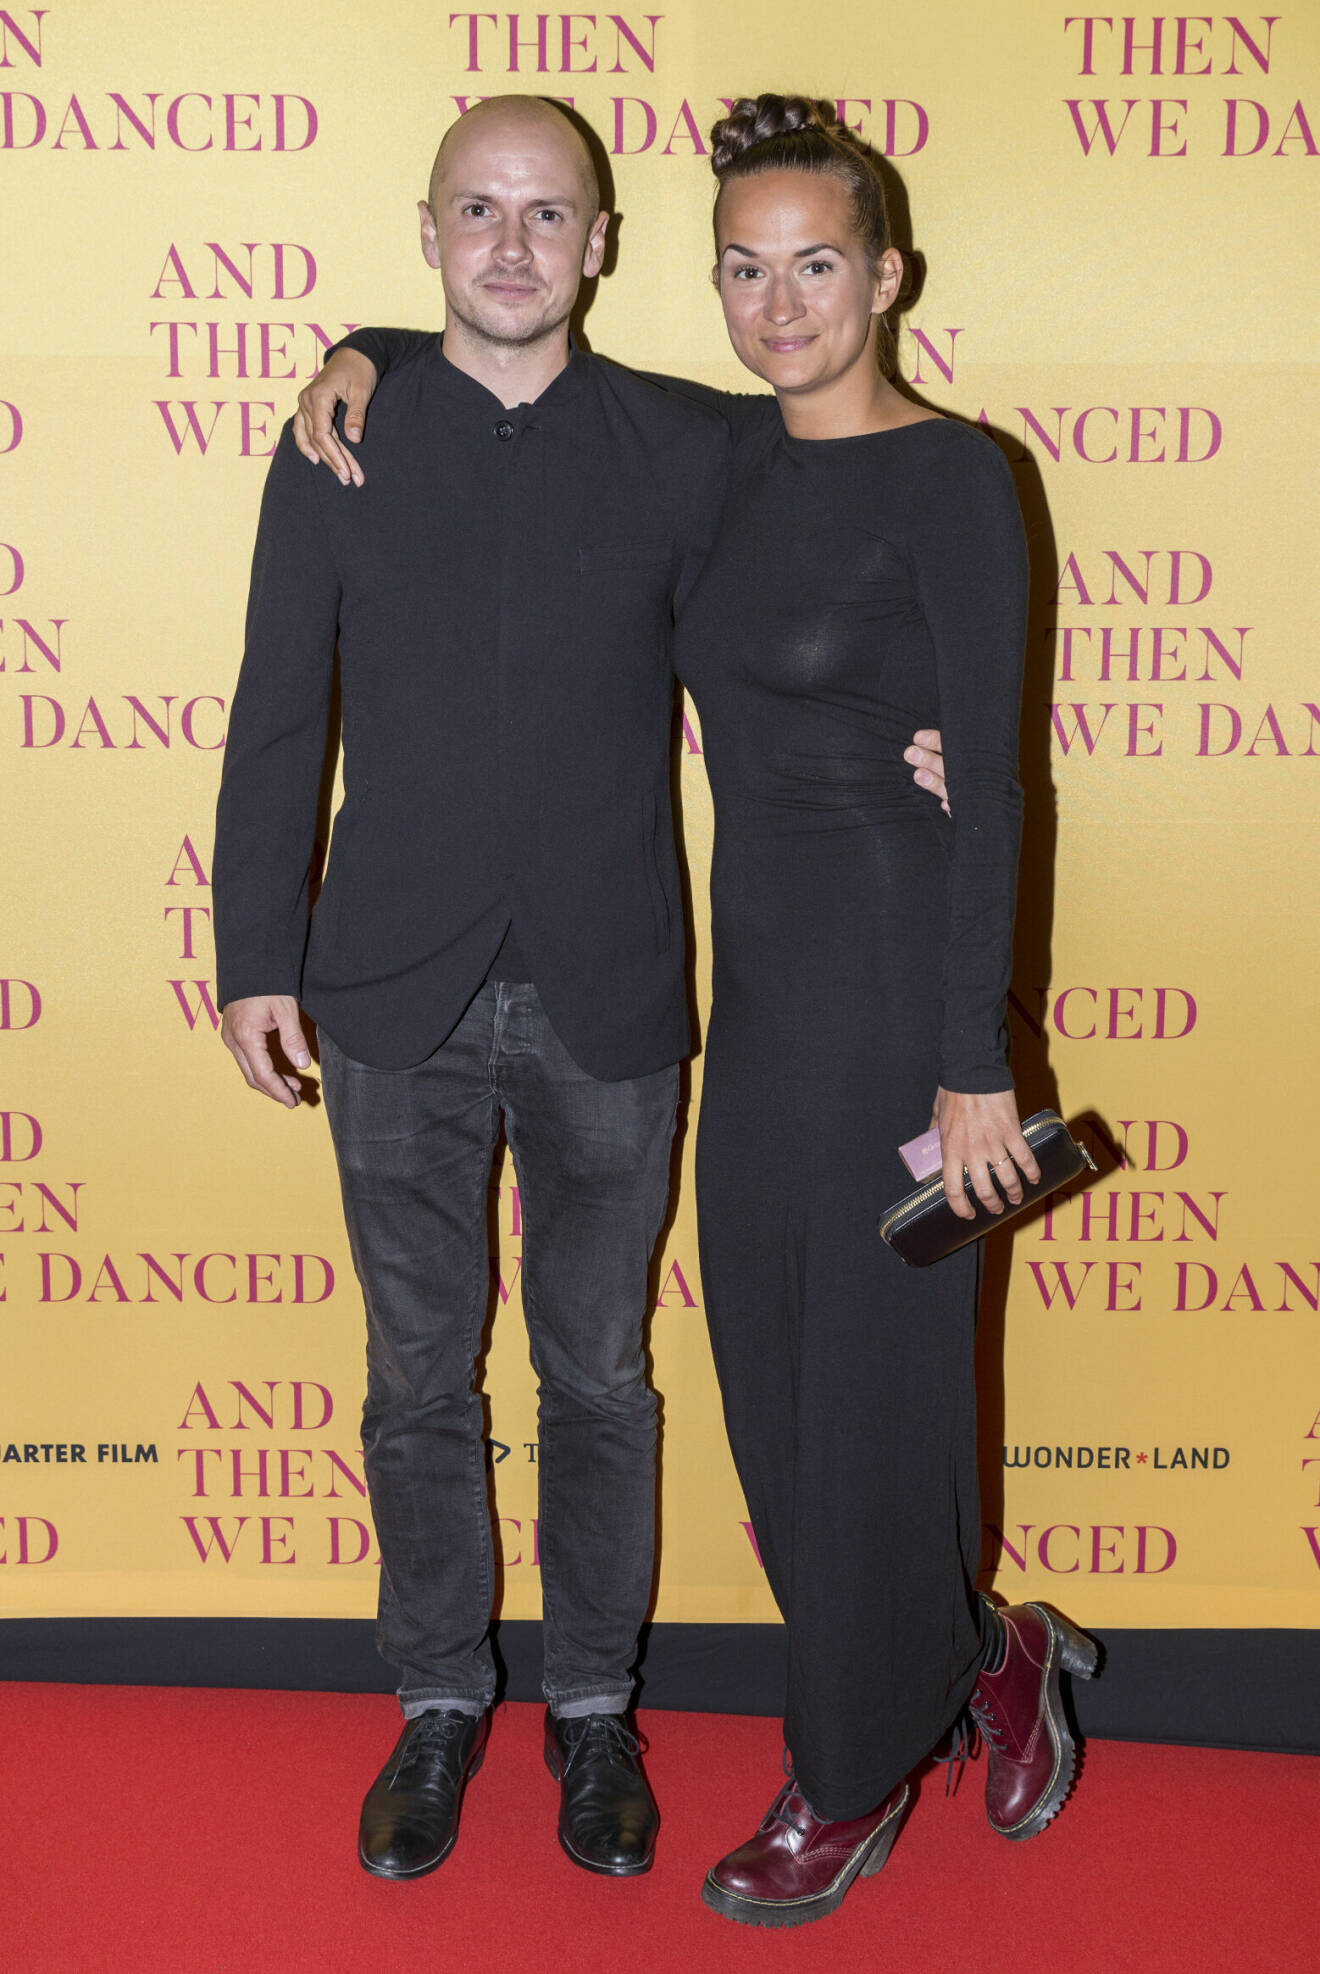 Vimmelbild på Bianca Kronlöf och hennes pojkvän Petter Oest som håller armen om varandra på röda mattan innan premiären av filmen And then we danced 2019.